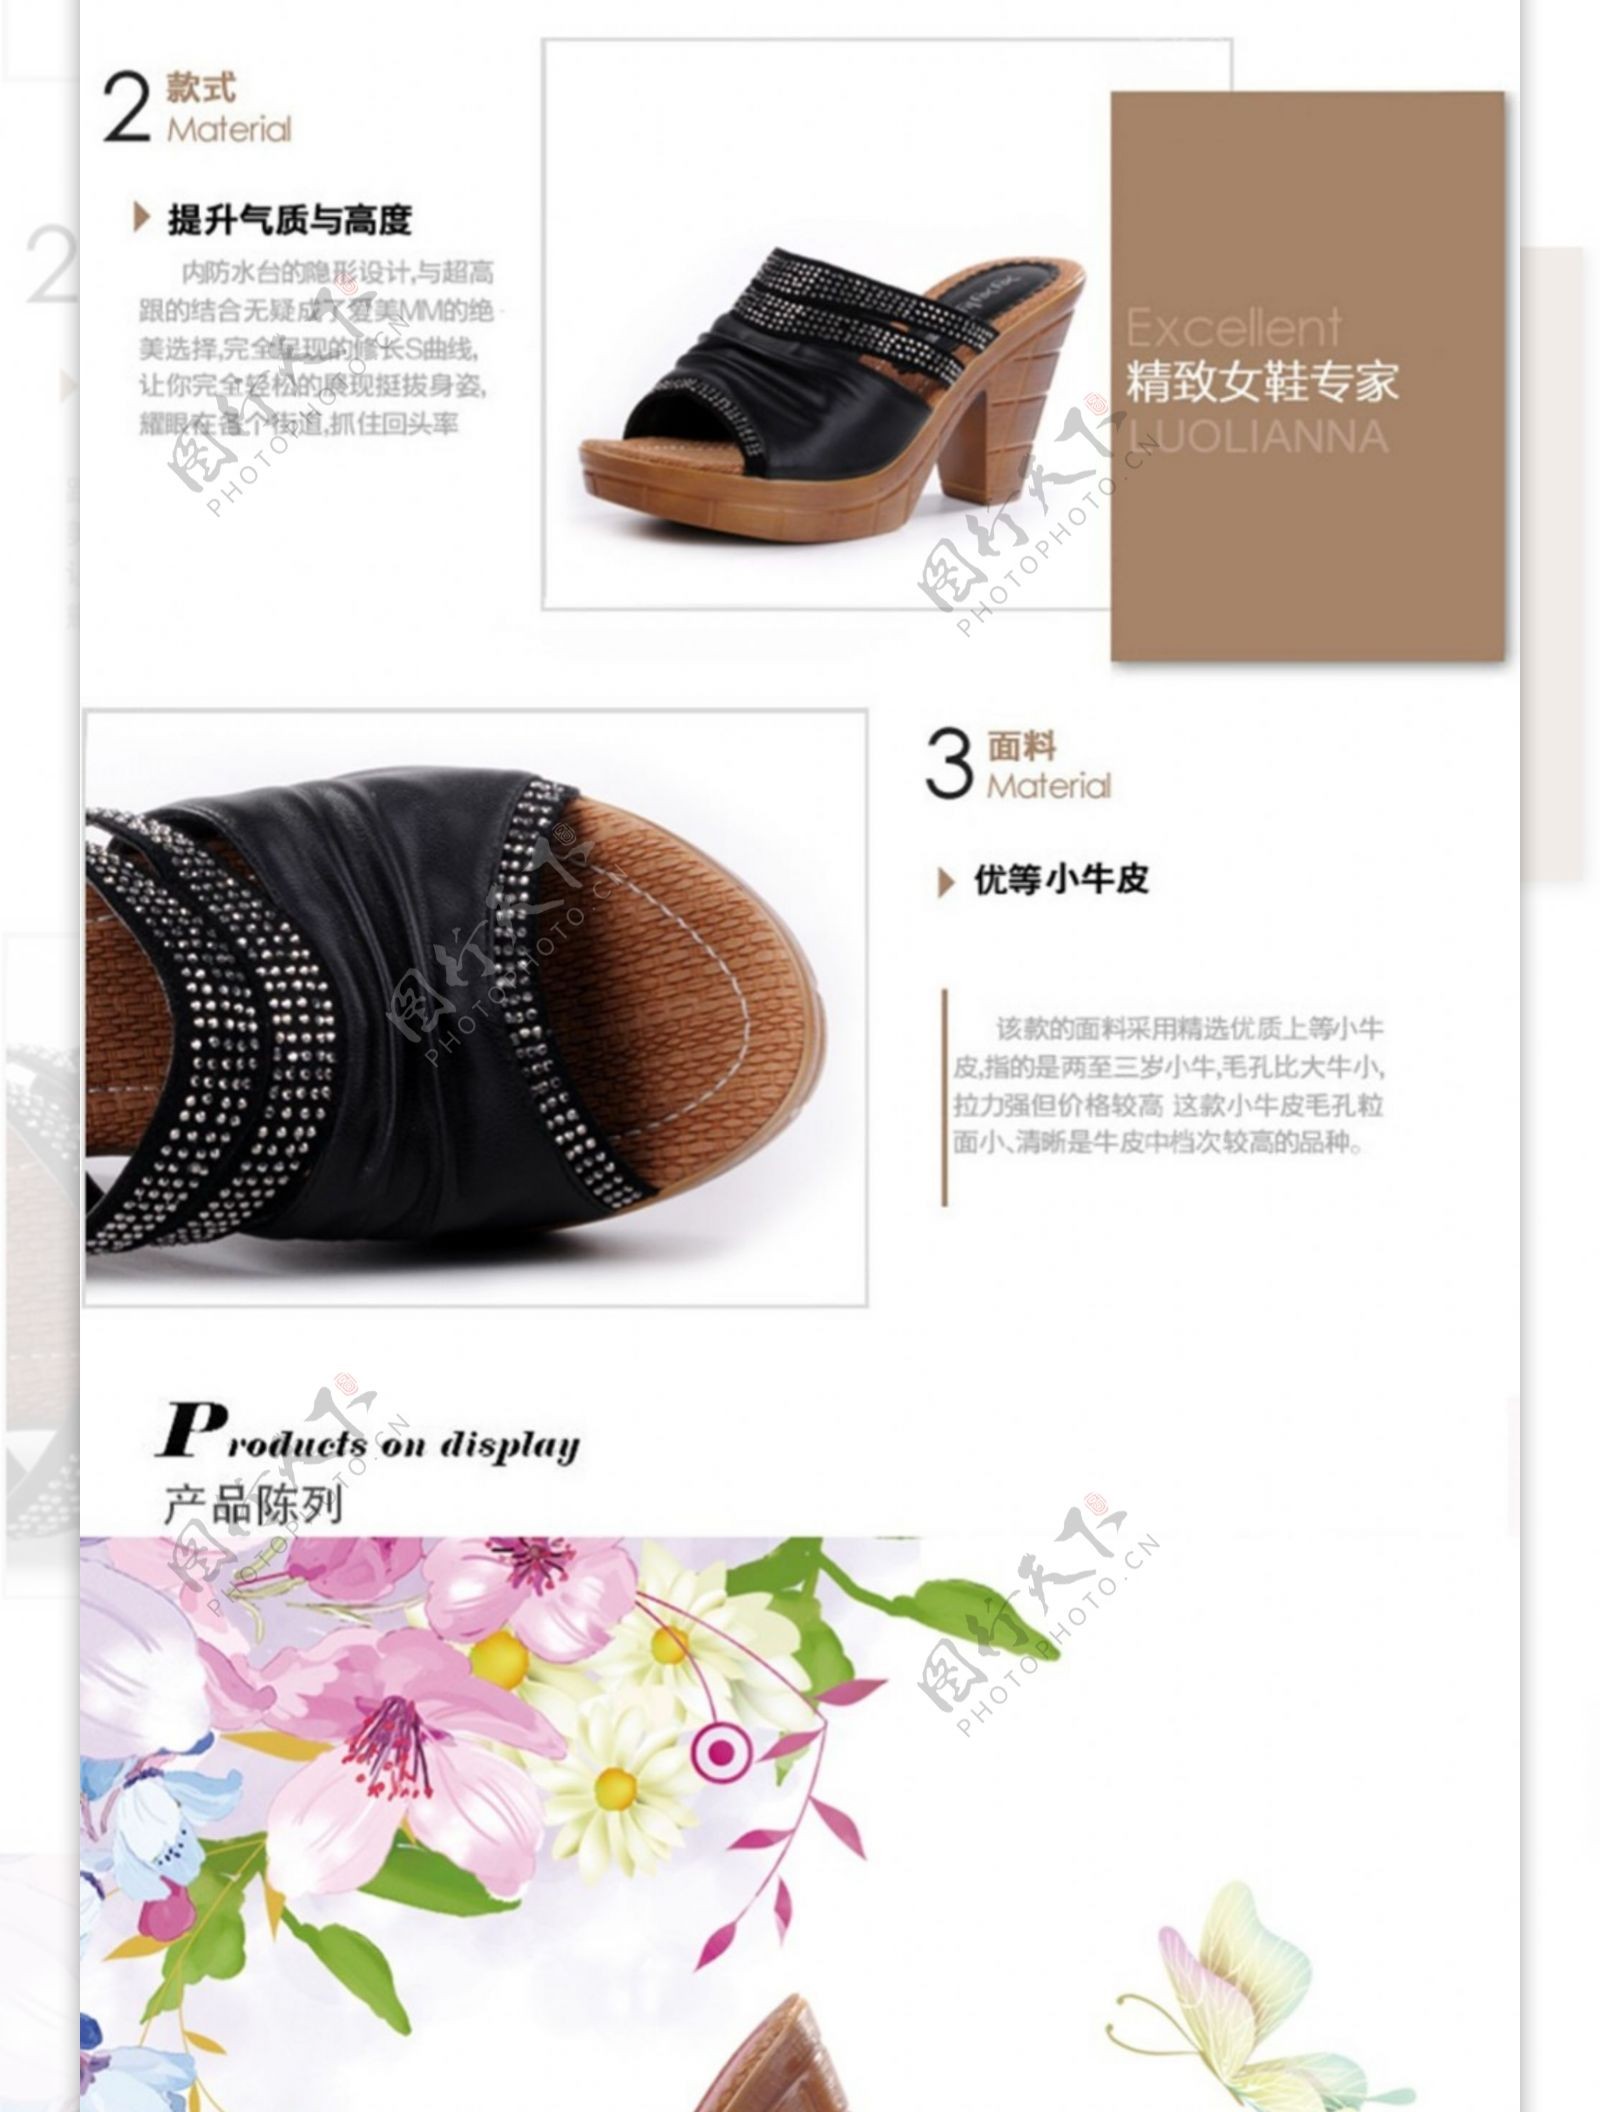 淘宝电商服装女士鞋业详情页平面设计